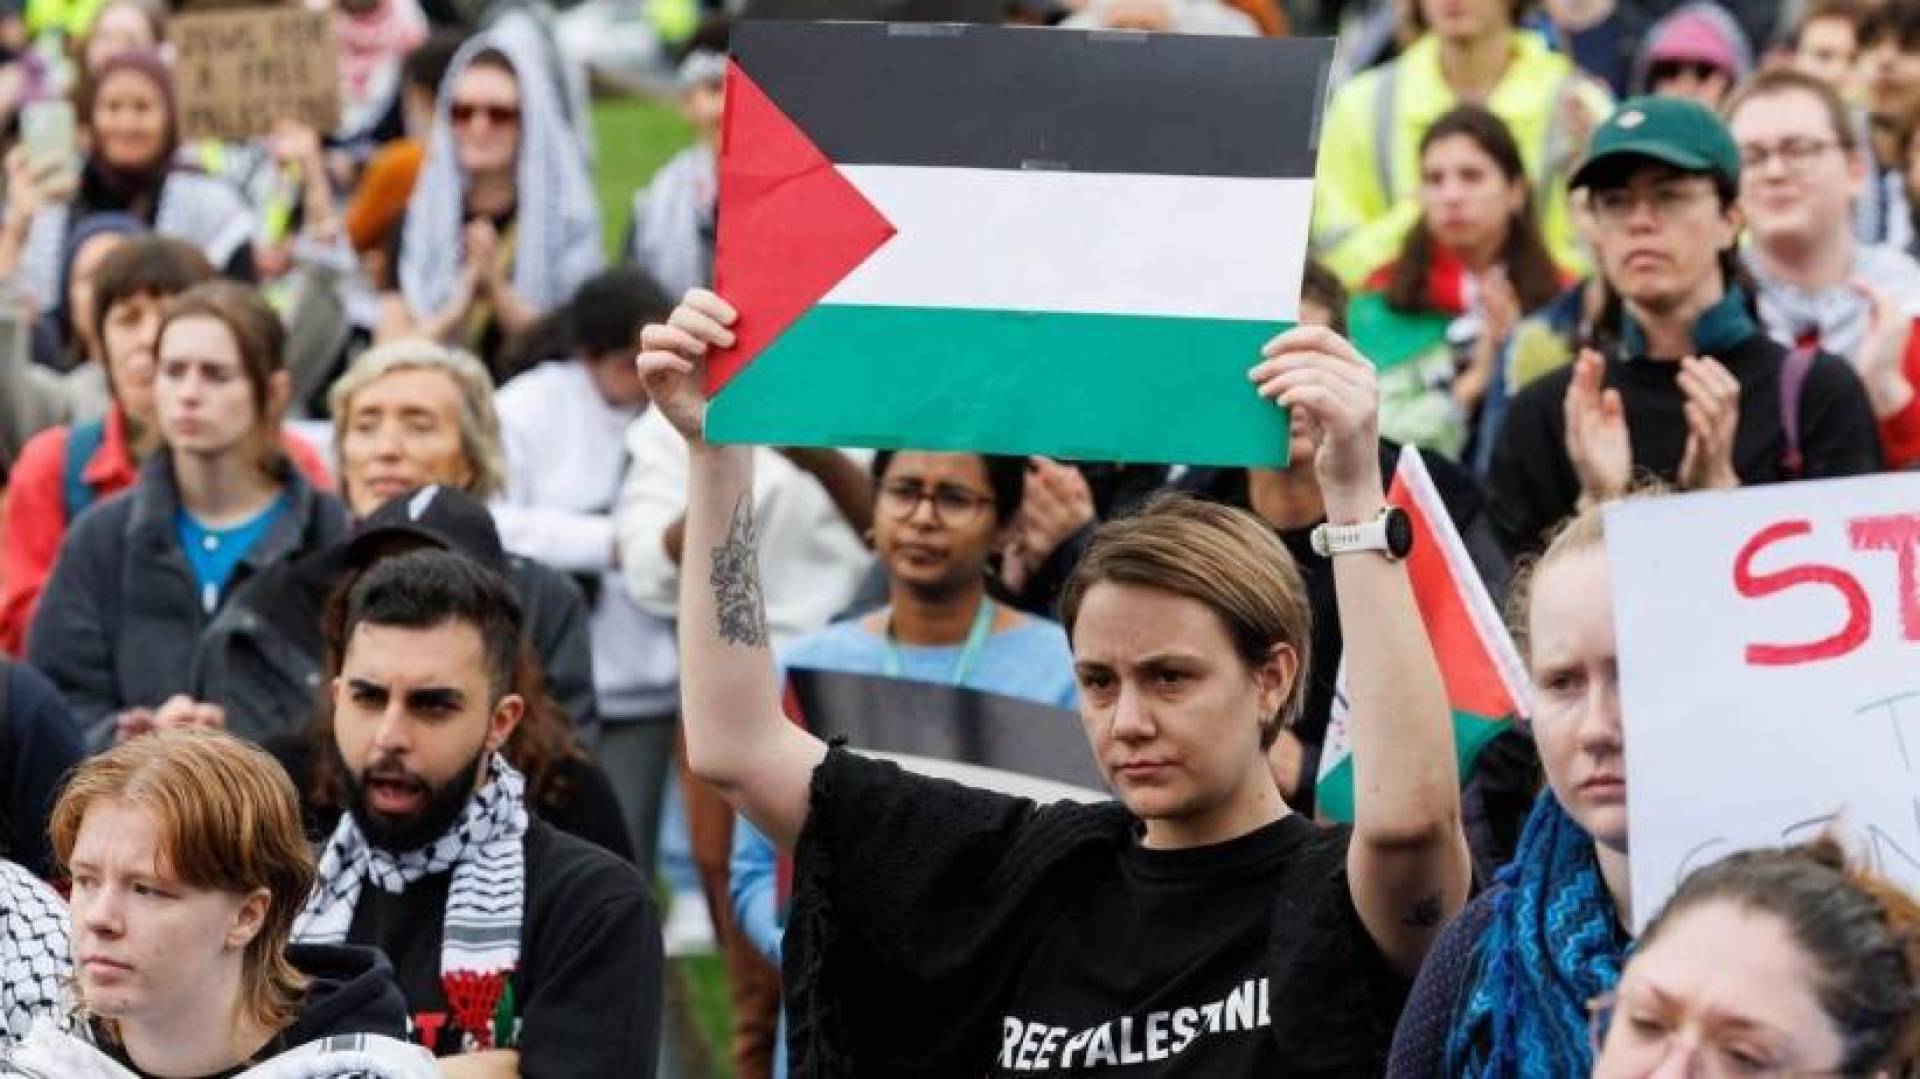 اشتباكات بين مؤيدين لفلسطين وآخرين لإسرائيل في جامعة سيدني